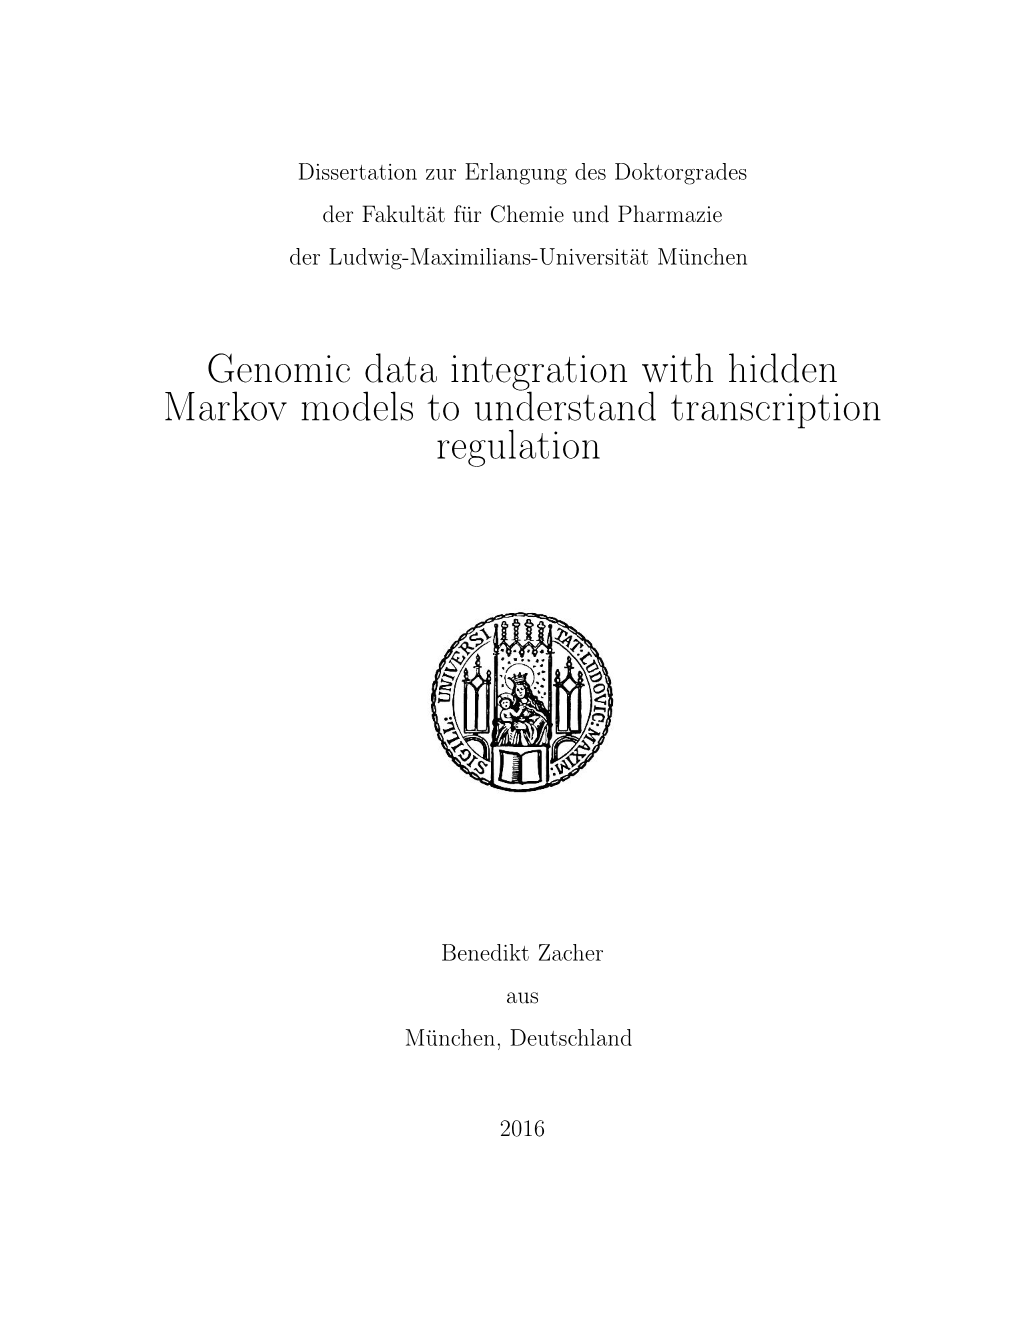 Genomic Data Integration with Hidden Markov Models to Understand Transcription Regulation